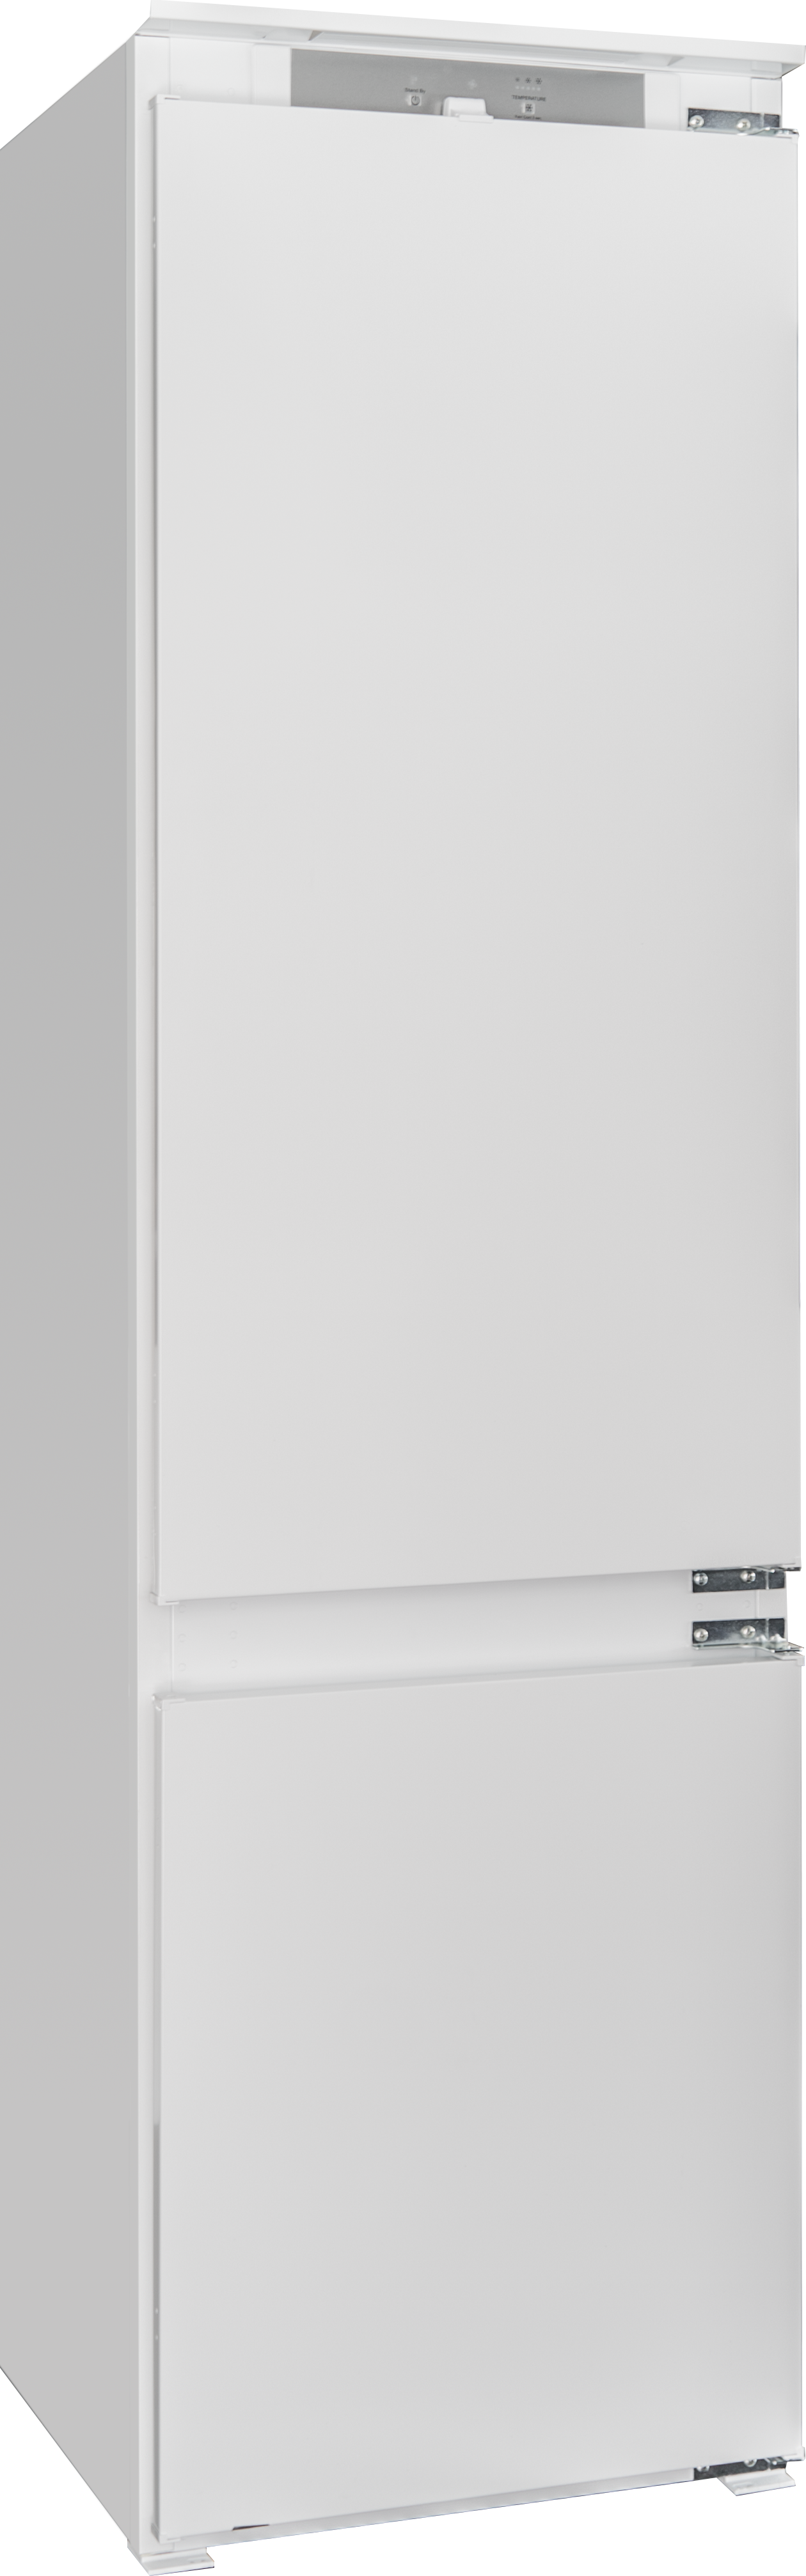 90172092 Встраиваемый холодильник KRB 19369 54x193.5 см цвет серебристый STLM-0123041 KUPPERSBERG